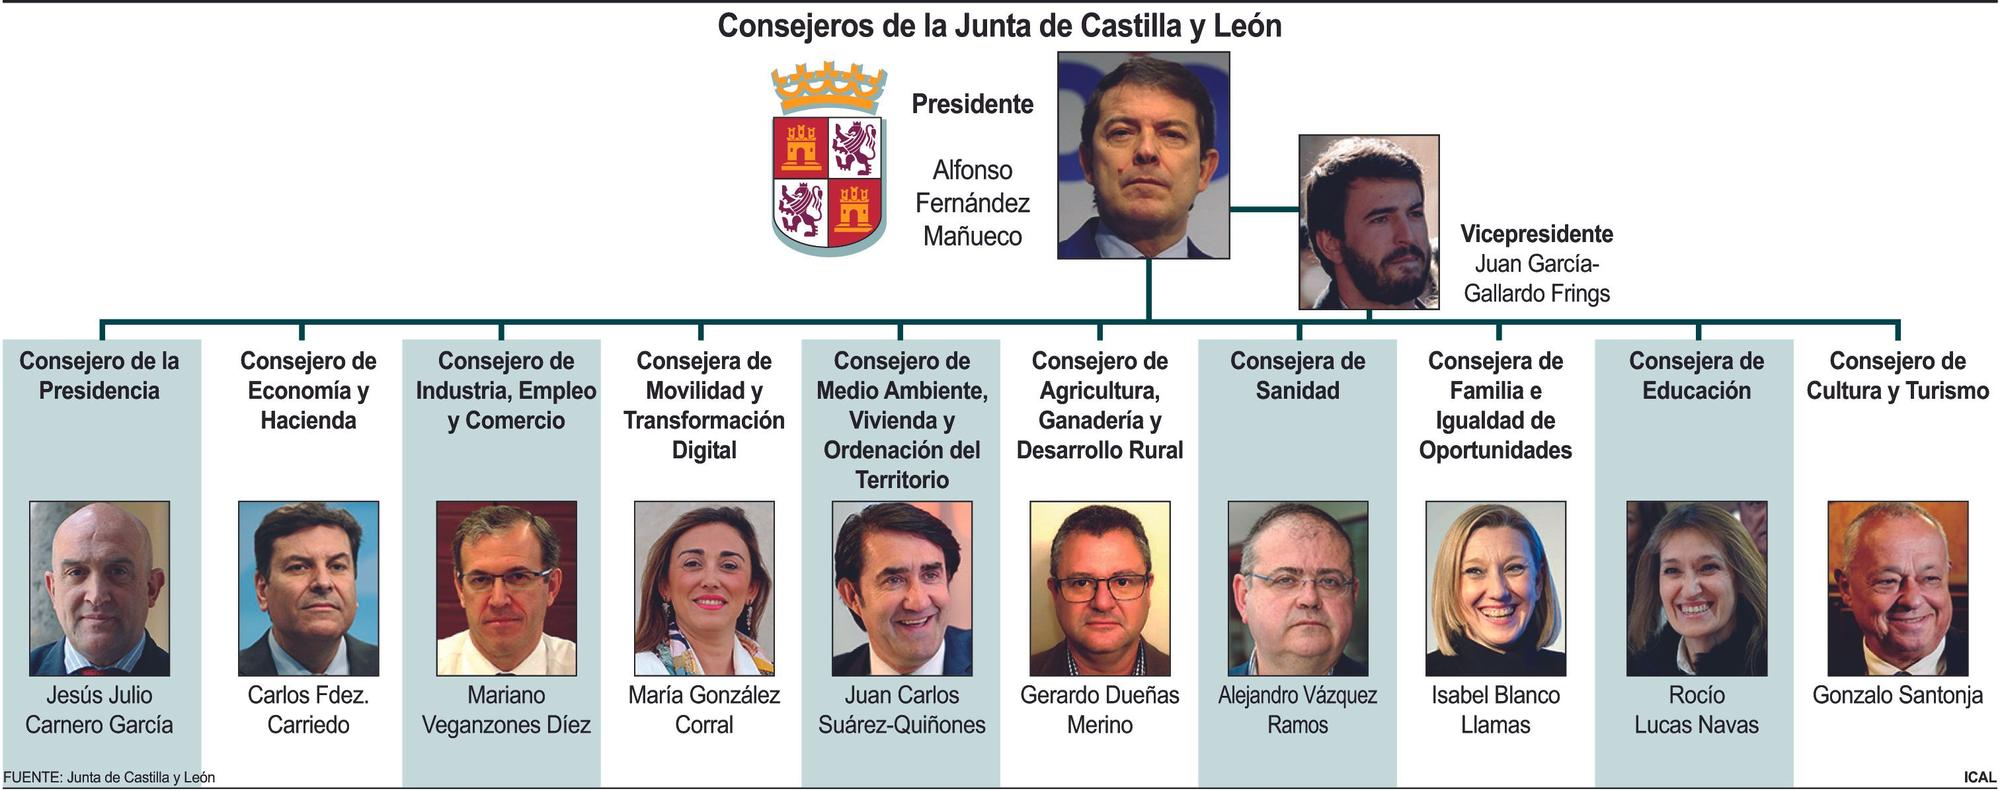 Consejeros de la Junta de Castilla y León.